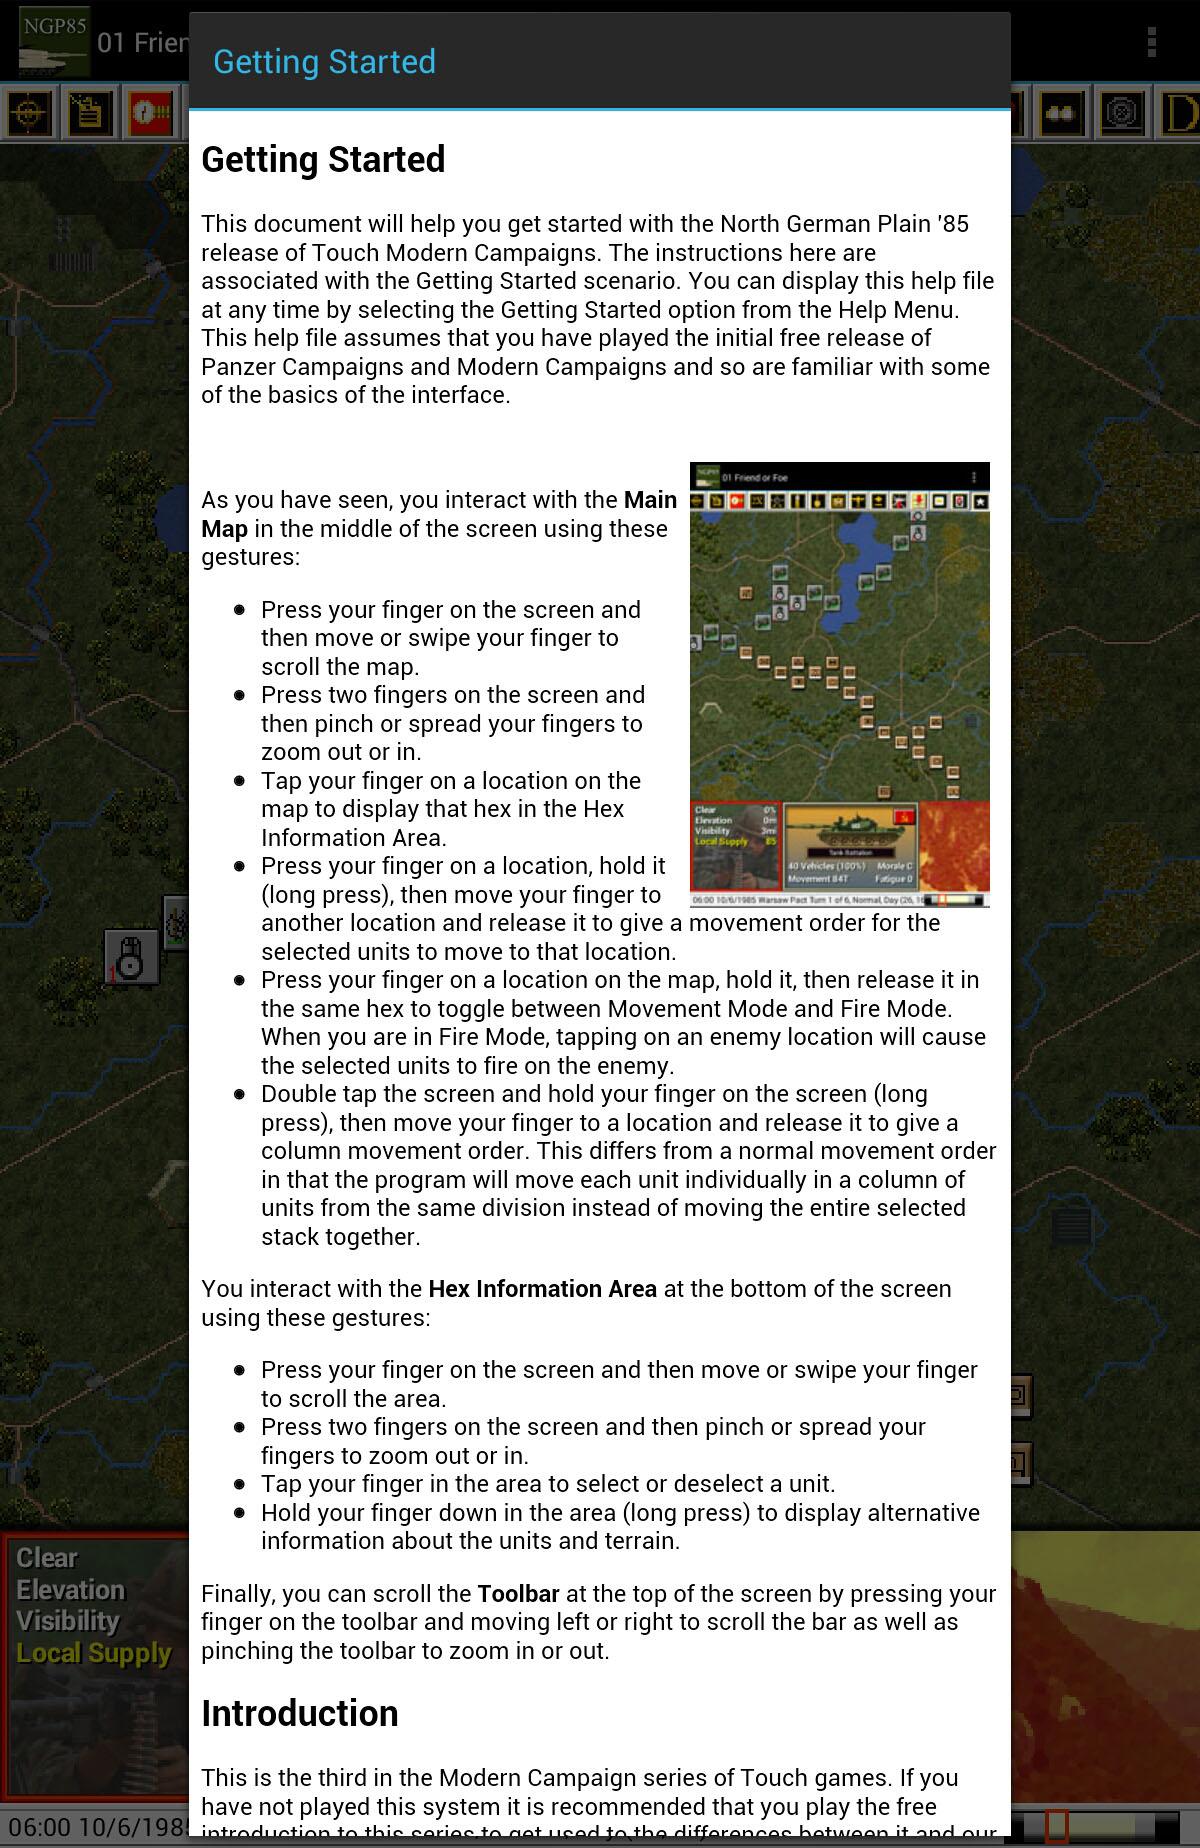 Android application Modern Campaigns- NG Plain '85 screenshort